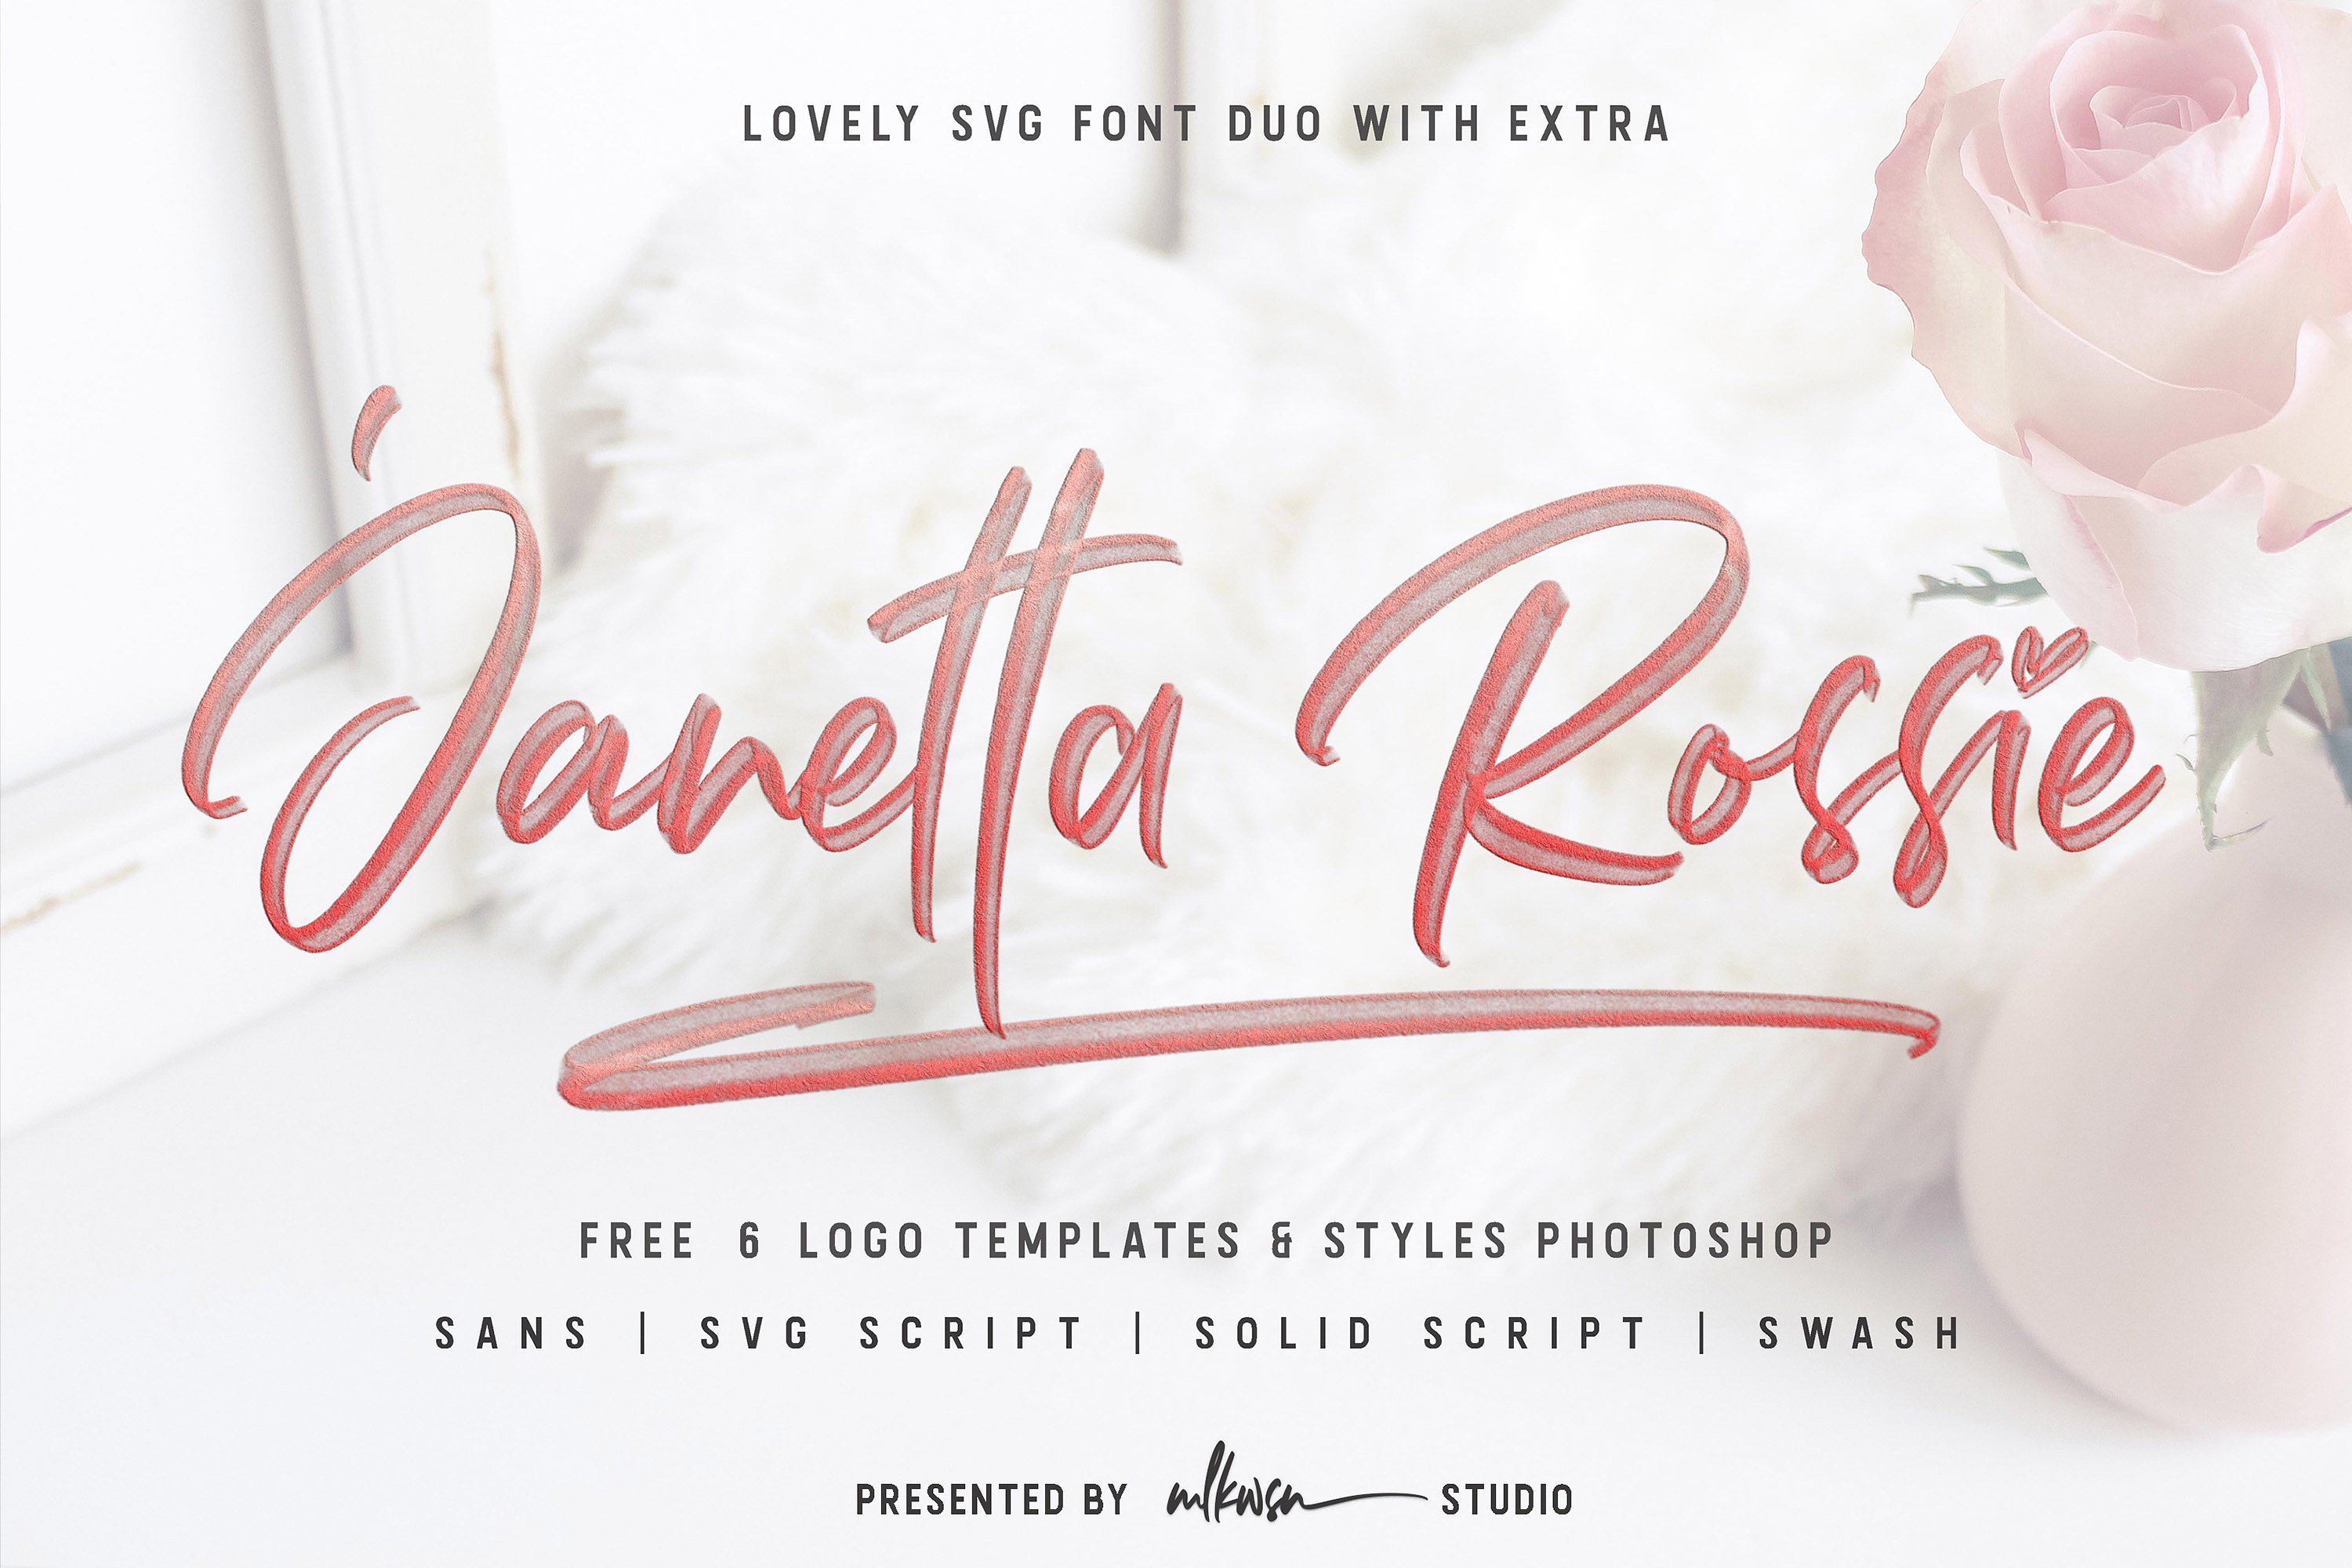 Janetta Rossie3d立体创意手写英文字体下载插图